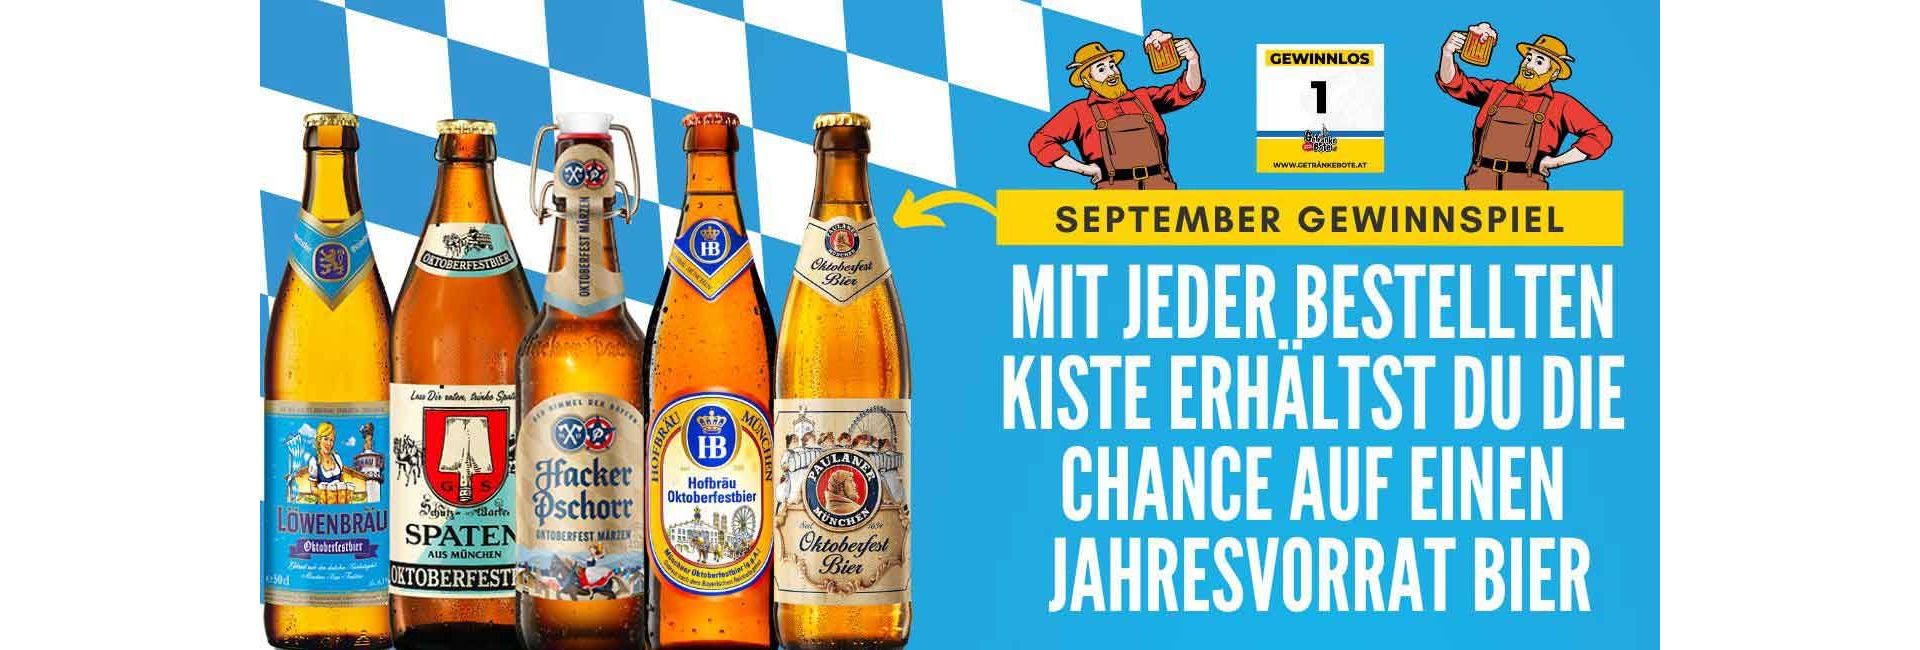 Oktoberfest Gewinnspiel - Jahresvorrat Bier *UPDATE GEWINNZAHLEN*